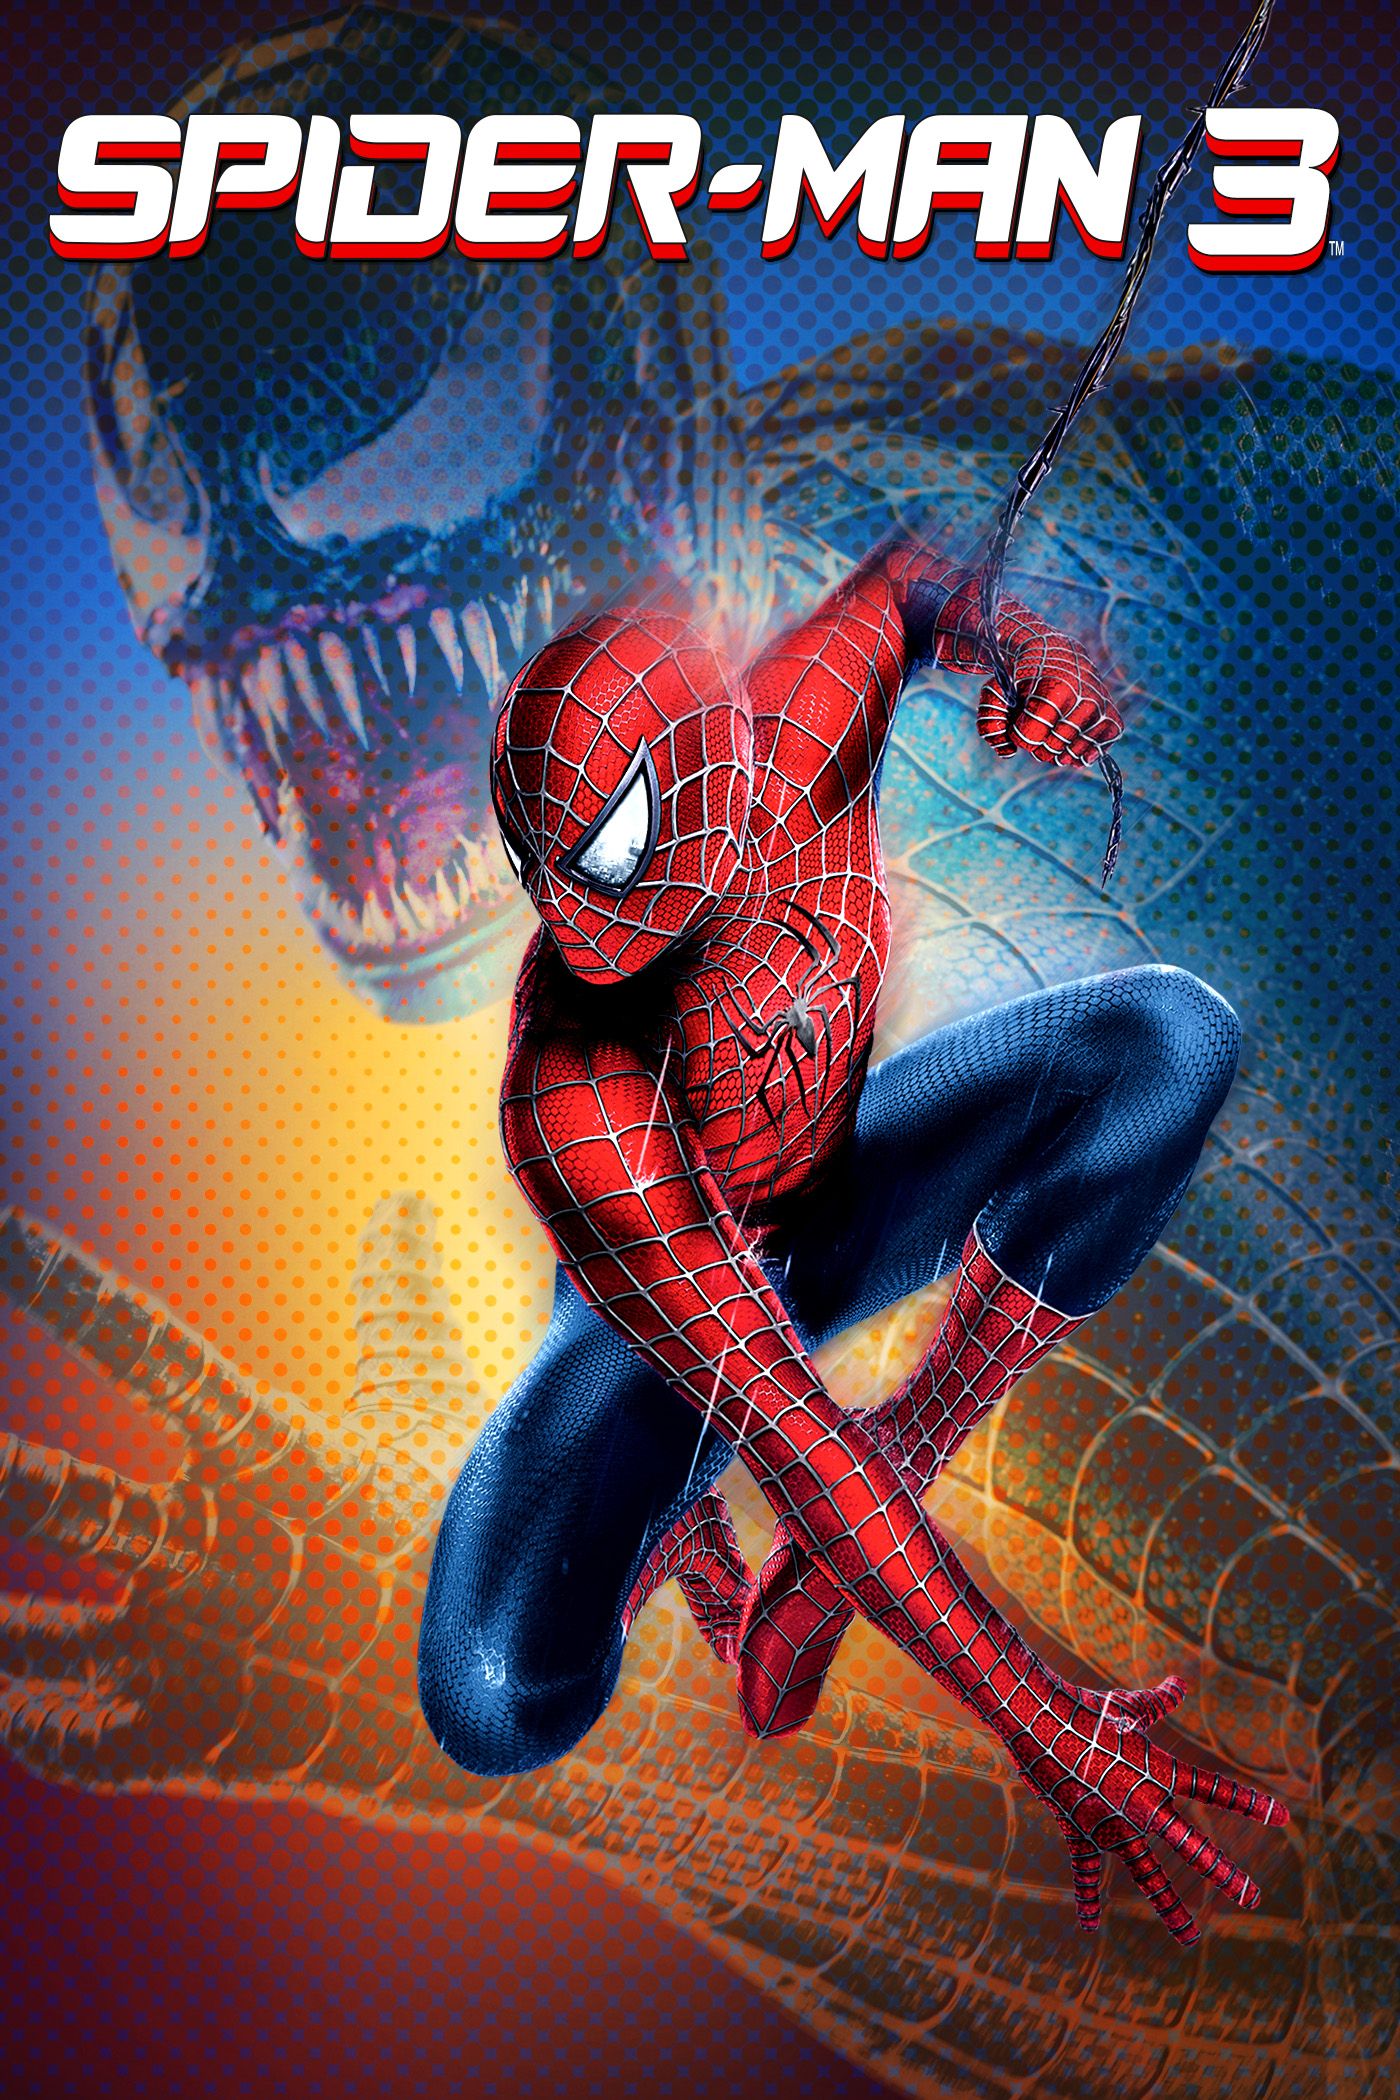 Spider-man 3 free online movie